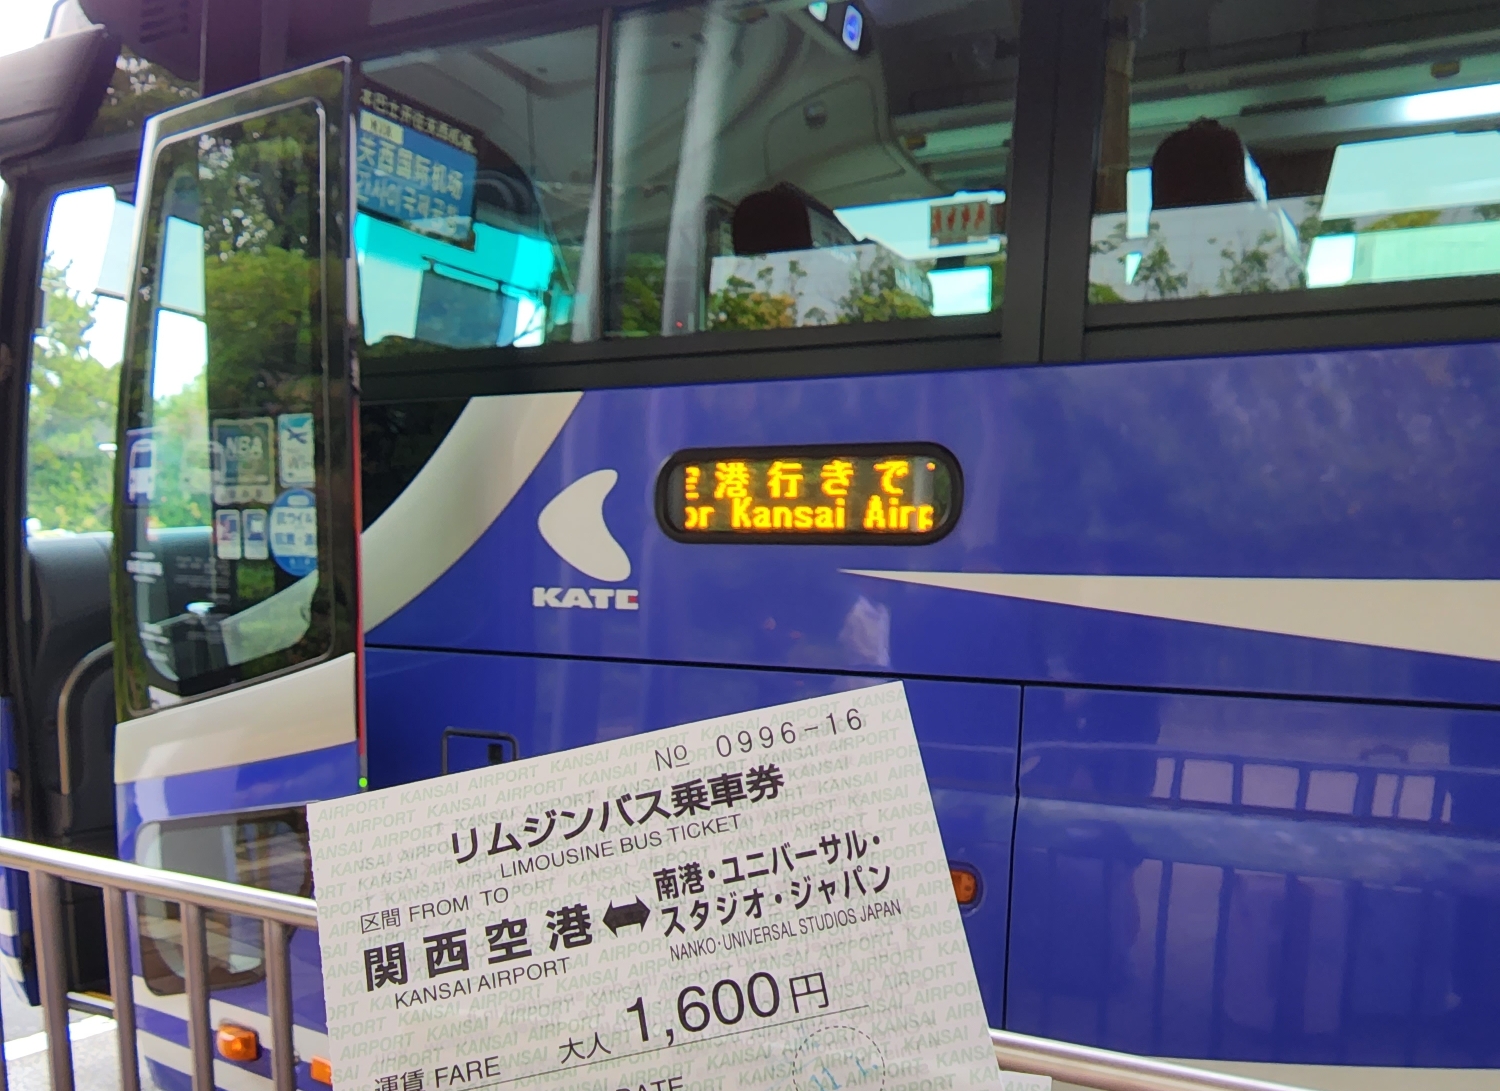 유니버설 스튜디오 재팬에서 간사이공항으로 가는 셔틀버스 1인당 요금은 1&#44;600엔